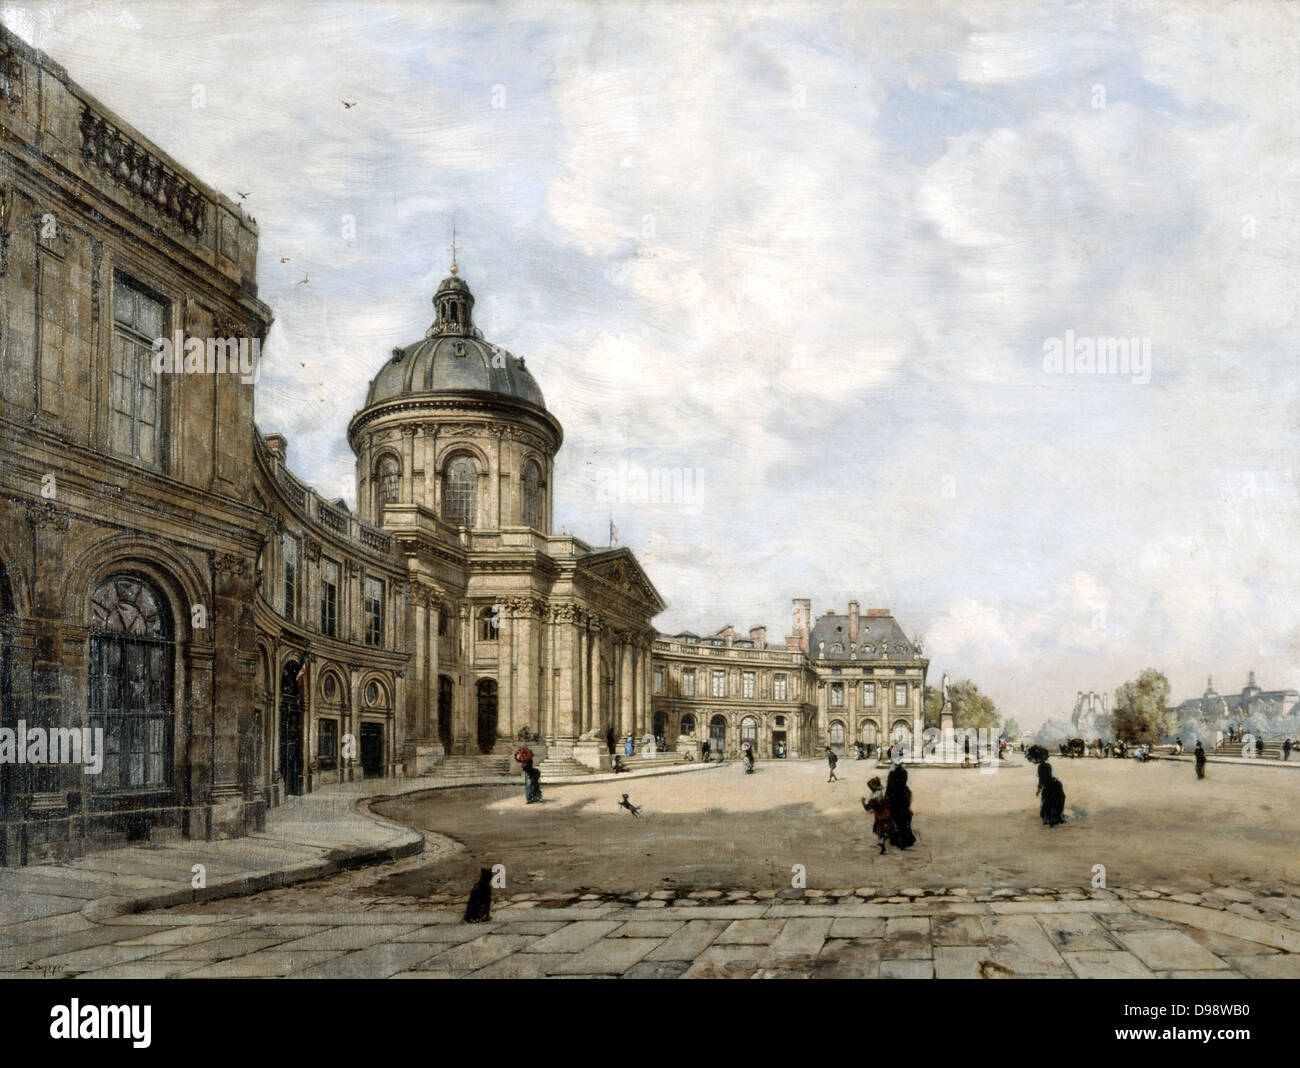 Institut français, Paris Septembre 1887'. Huile sur toile. Emmanuel Lansyer (1835-1893), peintre paysagiste français. France Culture Littérature Banque D'Images